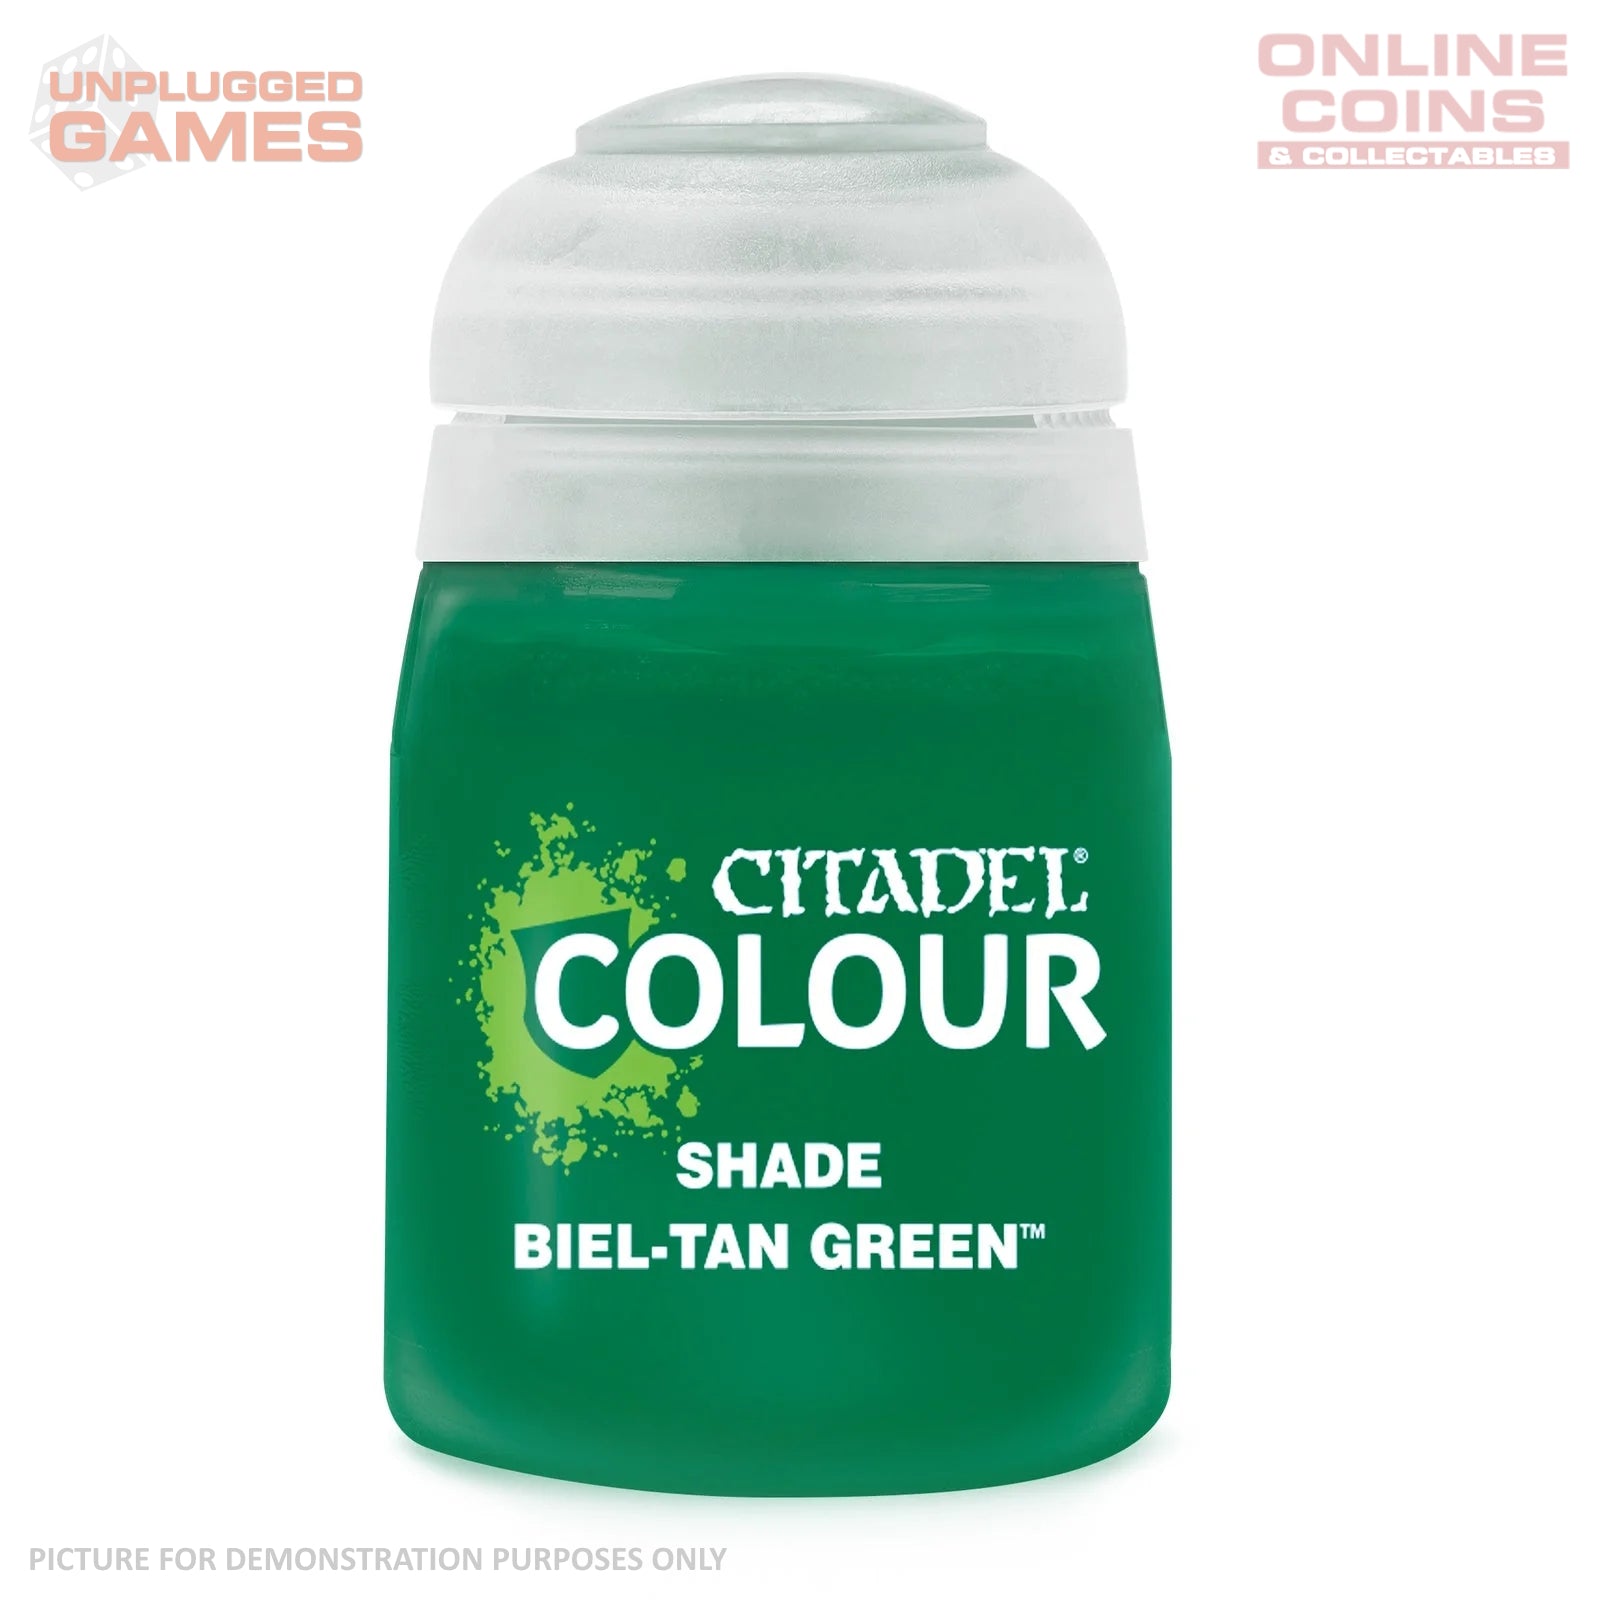 Citadel Shade - 24-19 Biel-Tan Green